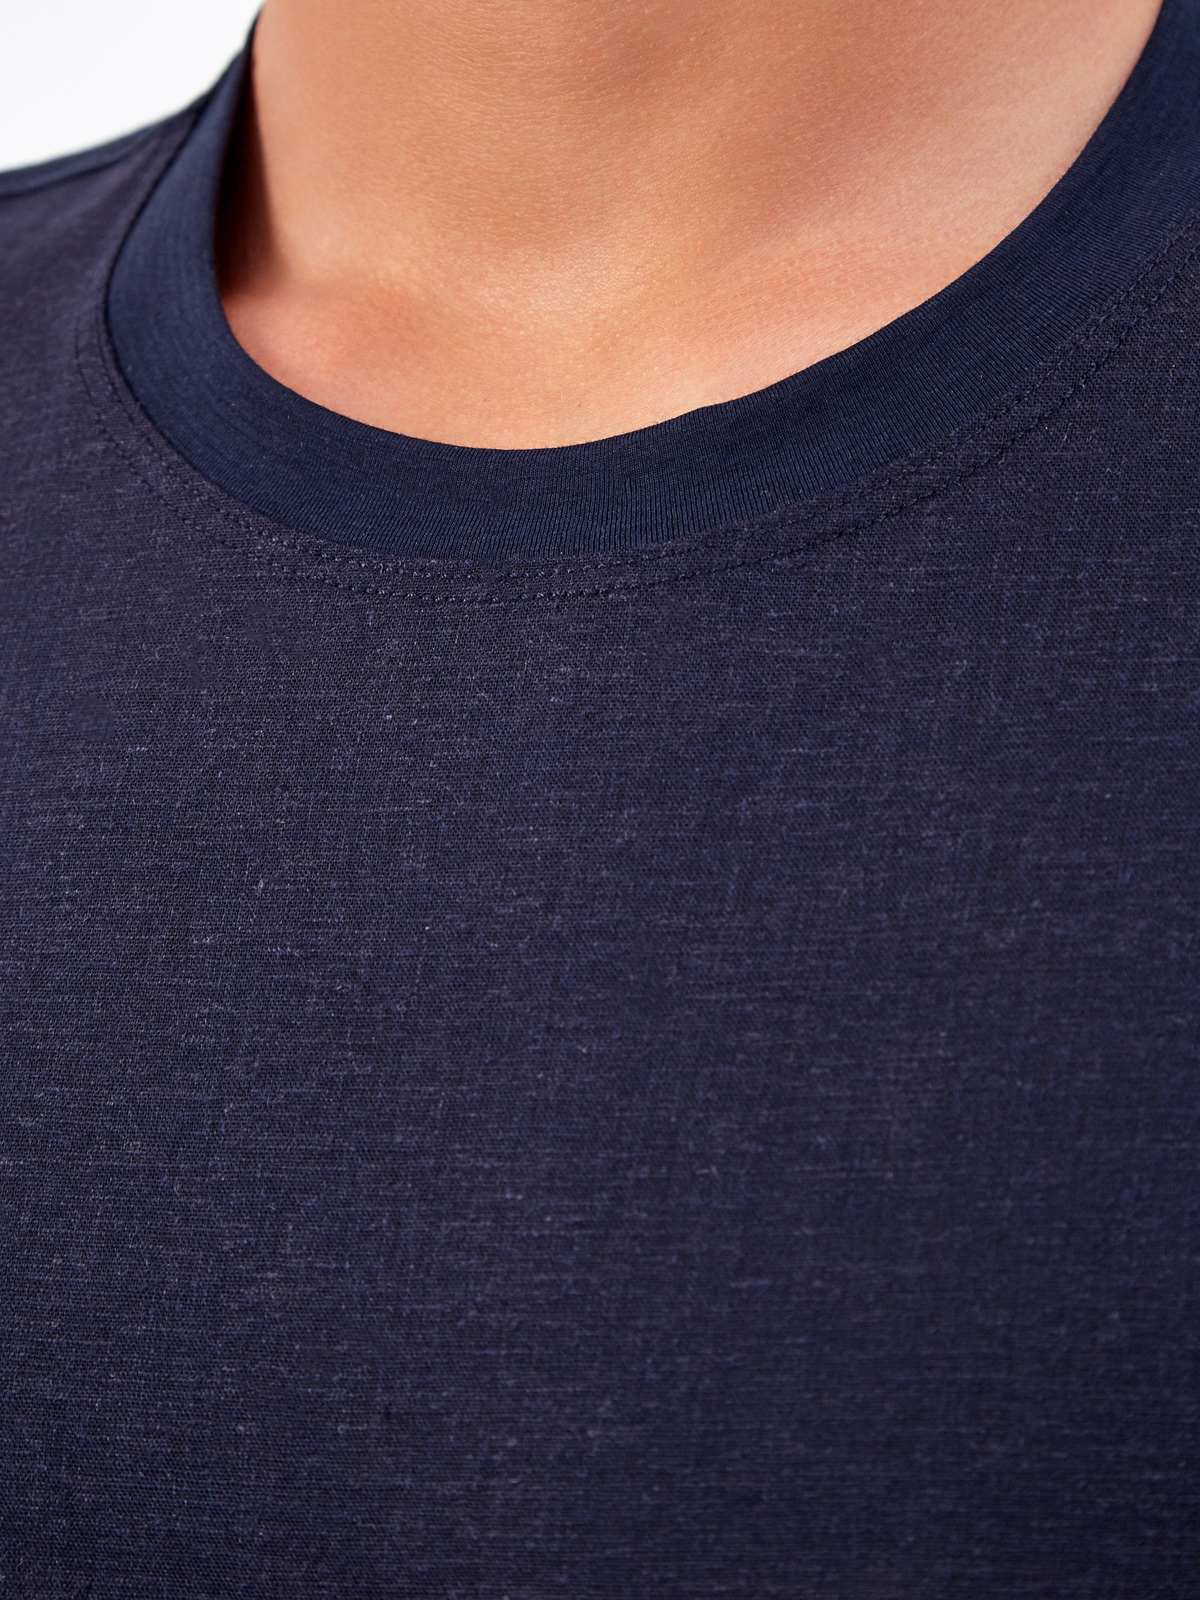 Комбинированная льняная футболка с воротом в рубчик CUDGI, цвет синий, размер 50;52;54;56;48 - фото 5